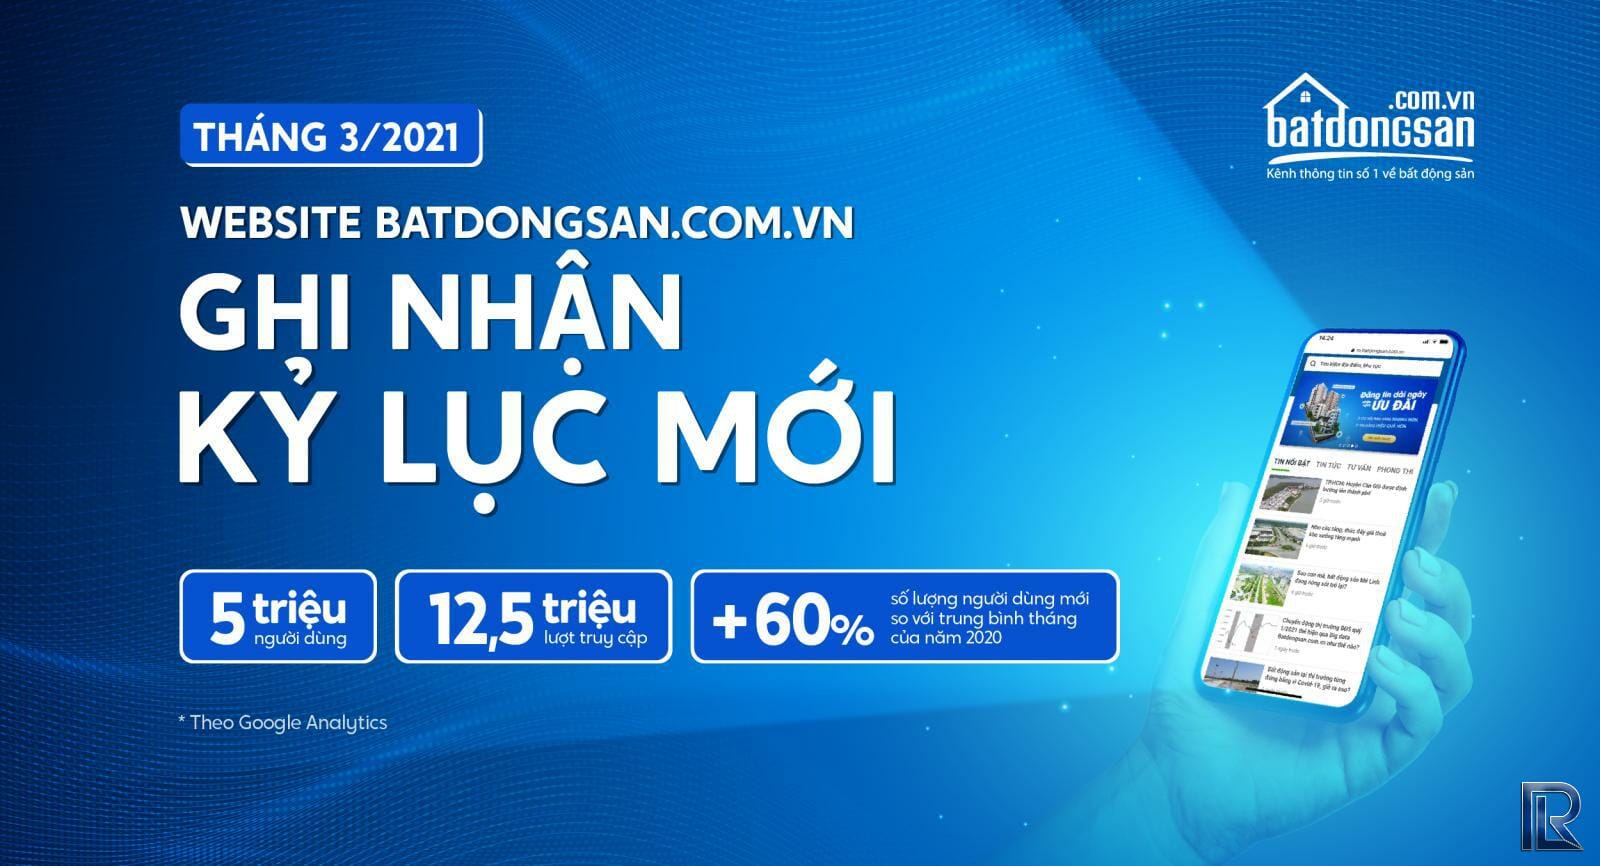 Batdongsan. Com. Vn đạt kỷ lục mới với 5 triệu người dùng